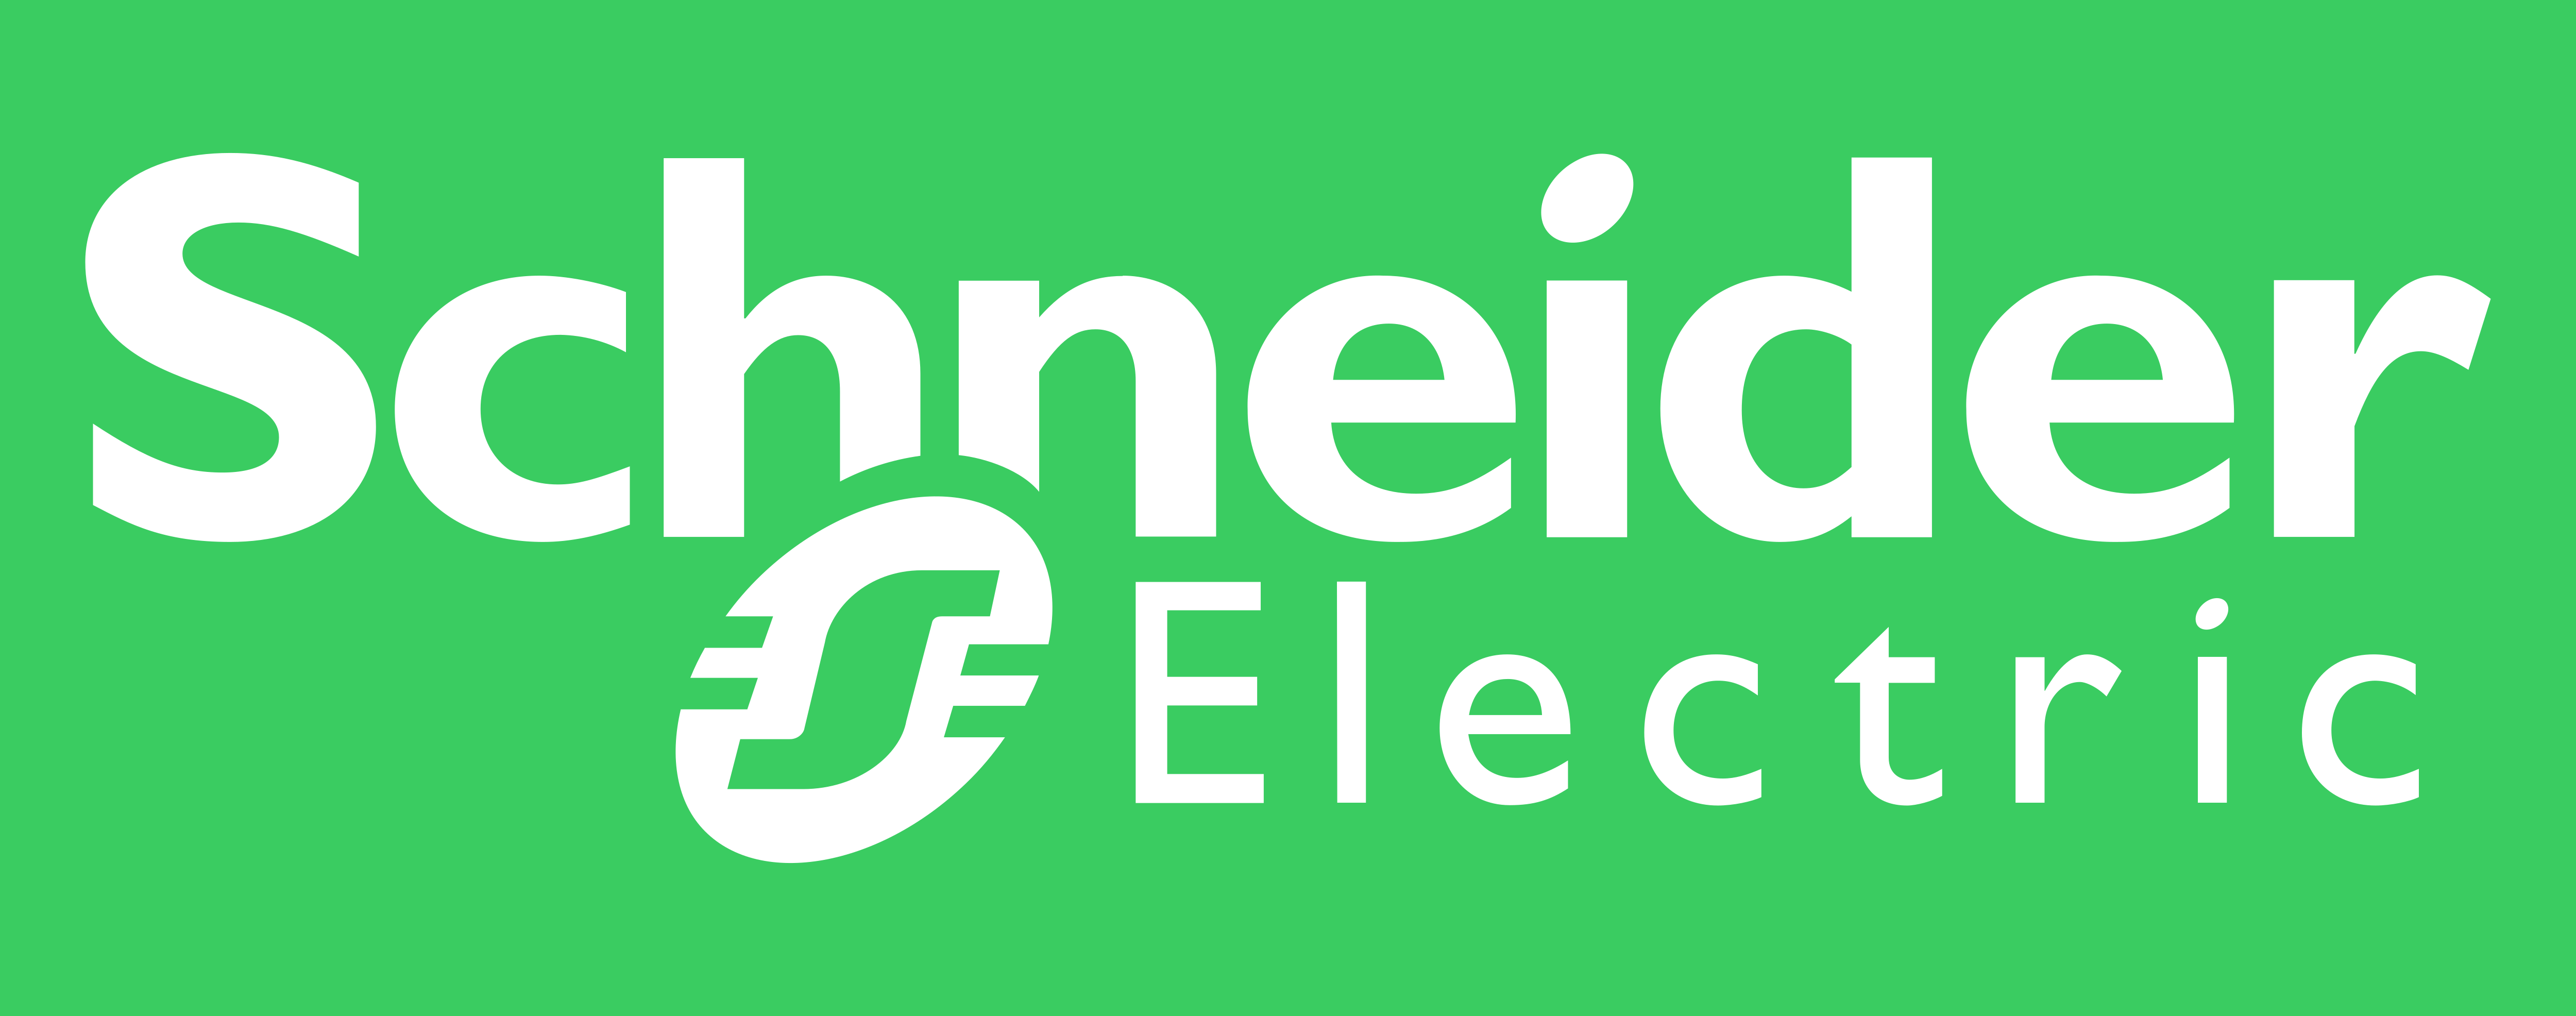 Schneider Electric – Logos Download